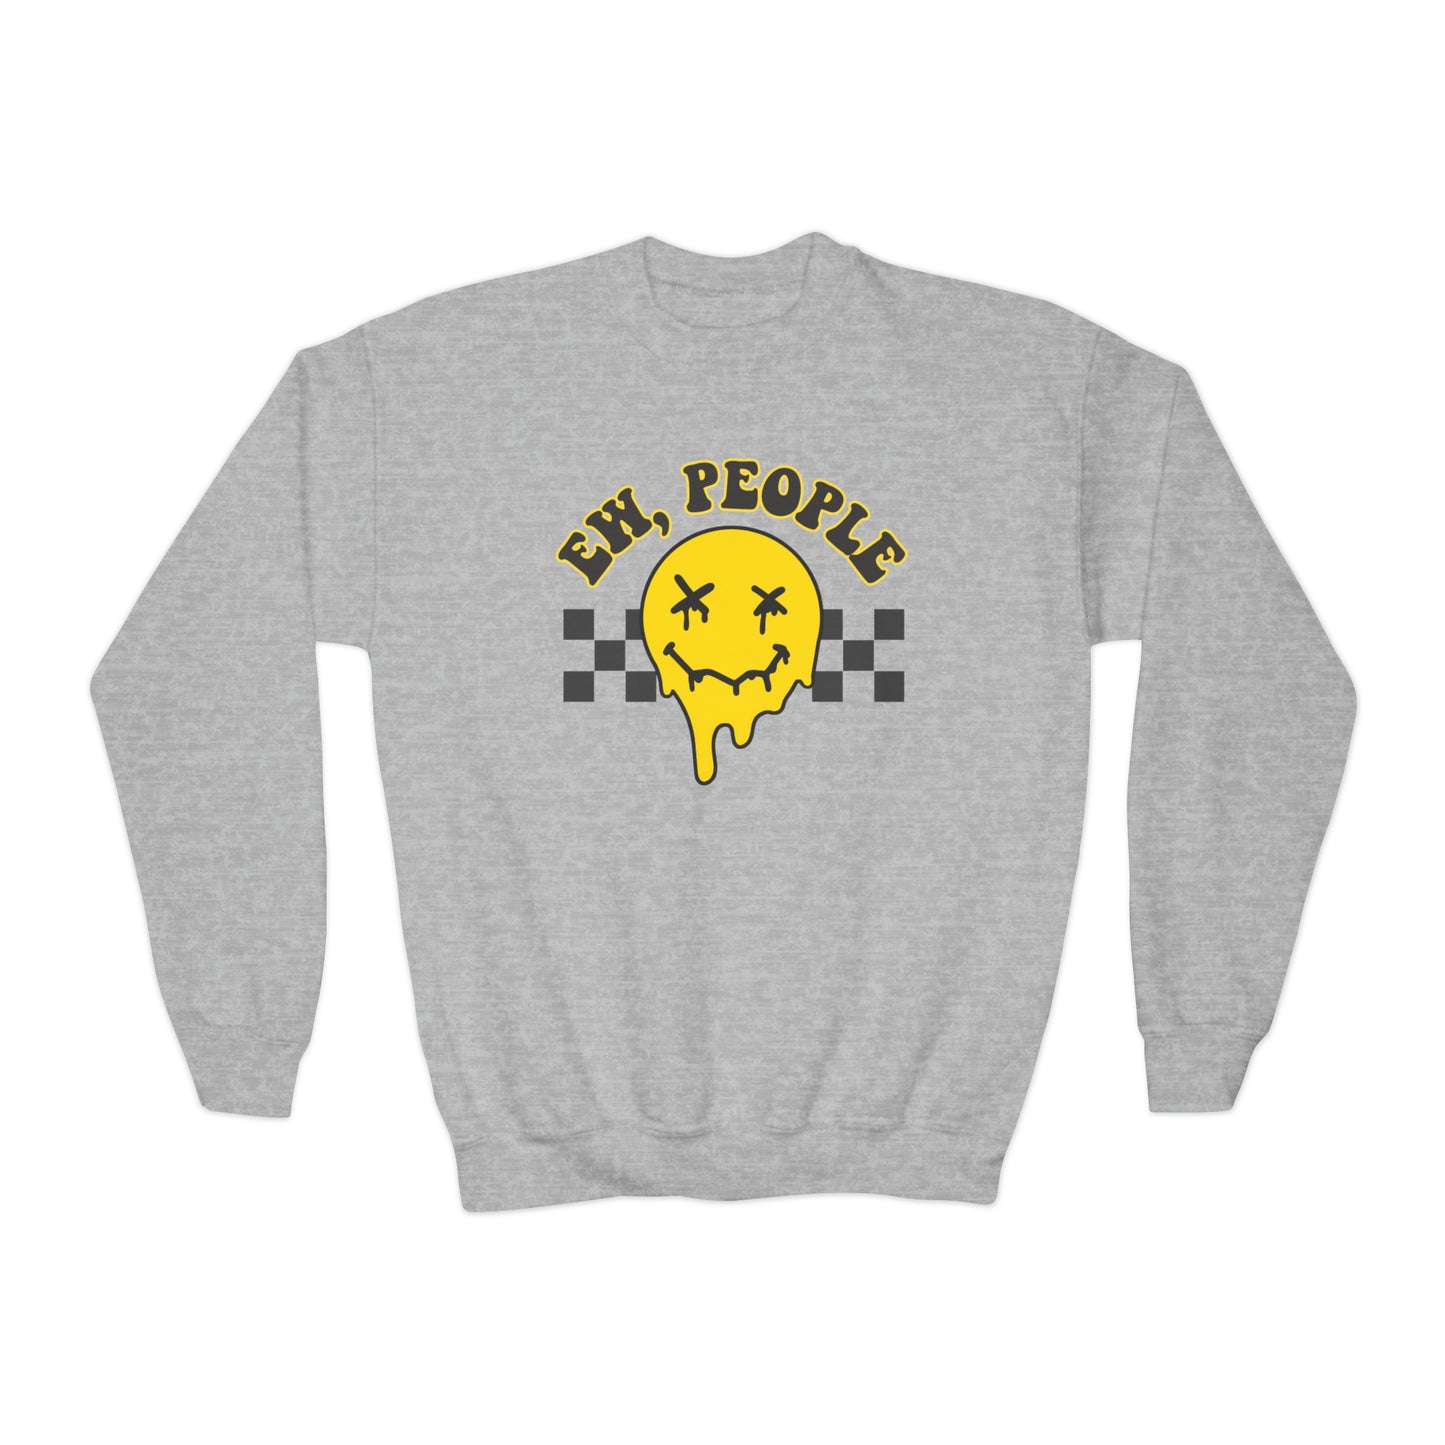 Ew, People - Youth Crewneck Sweatshirt